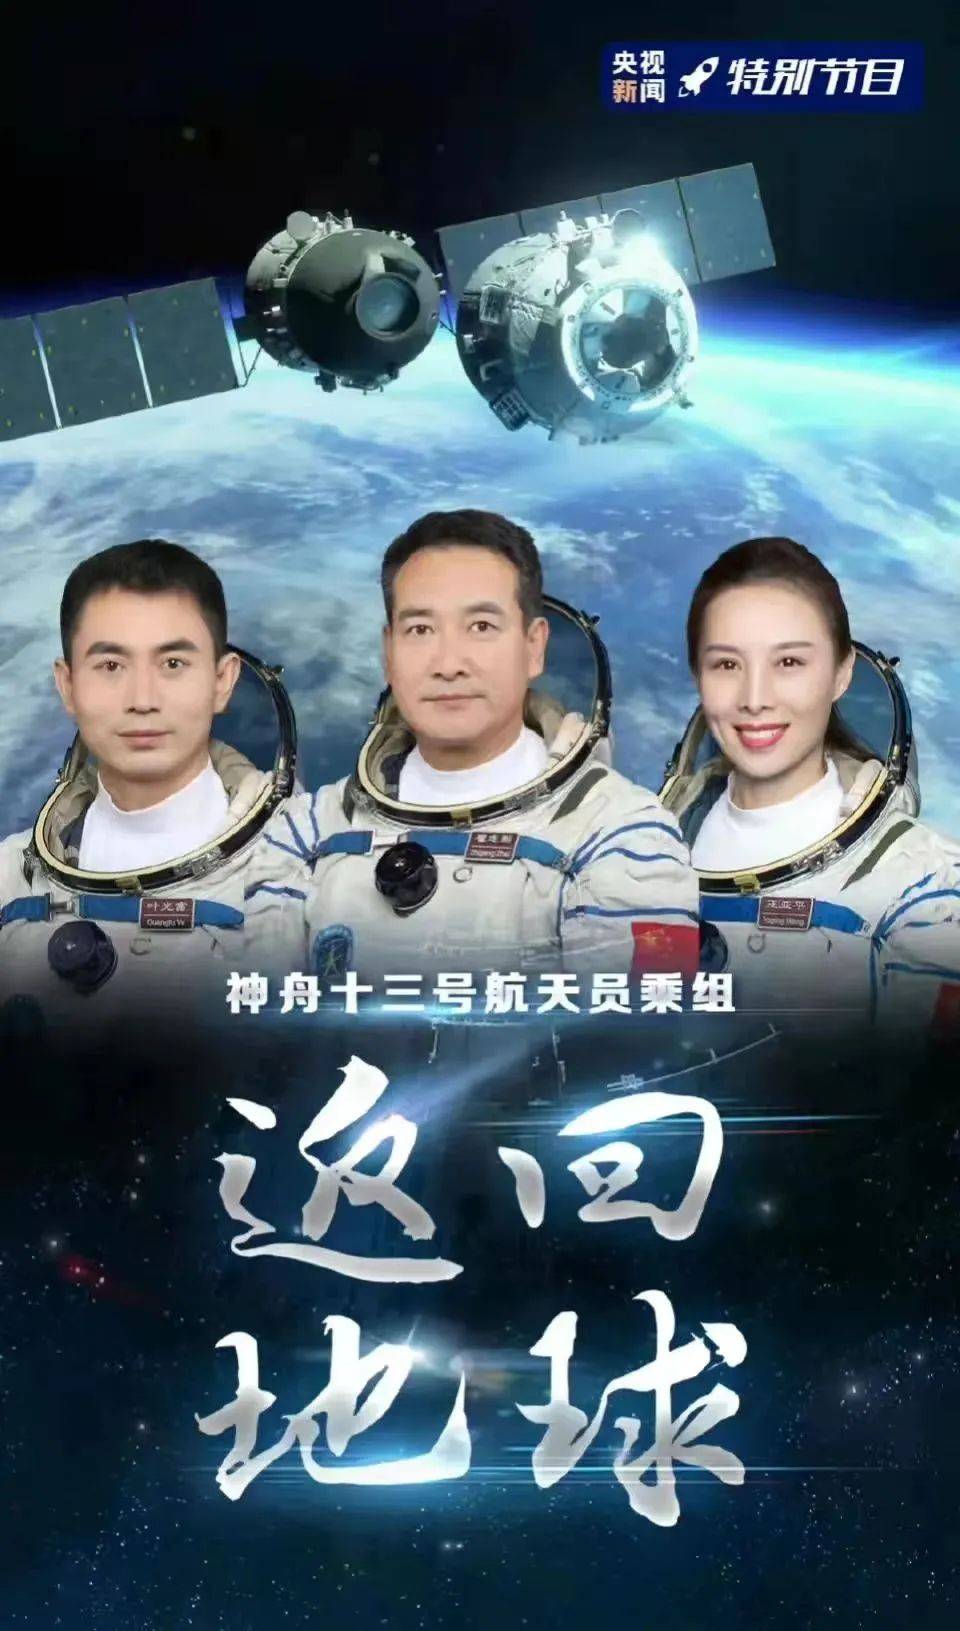 乌兰图雅星空敬中国航天人献给渴望拥抱星辰大海的逐梦人